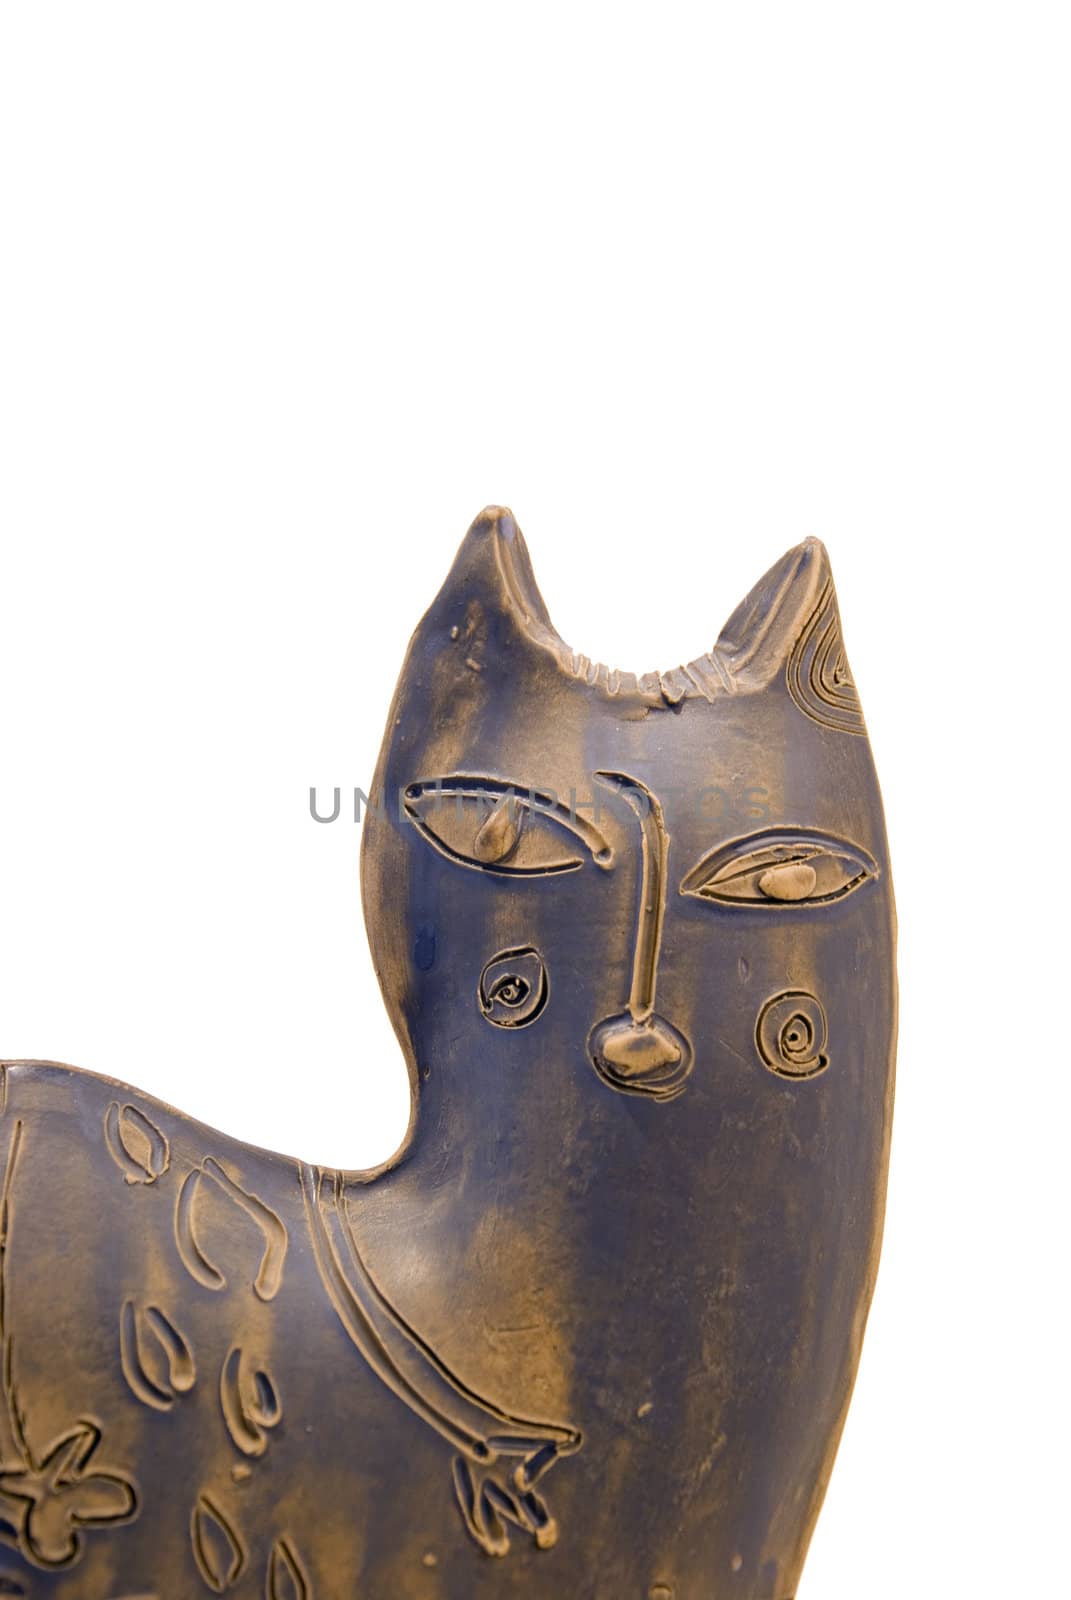 Ceramic cat by sauletas